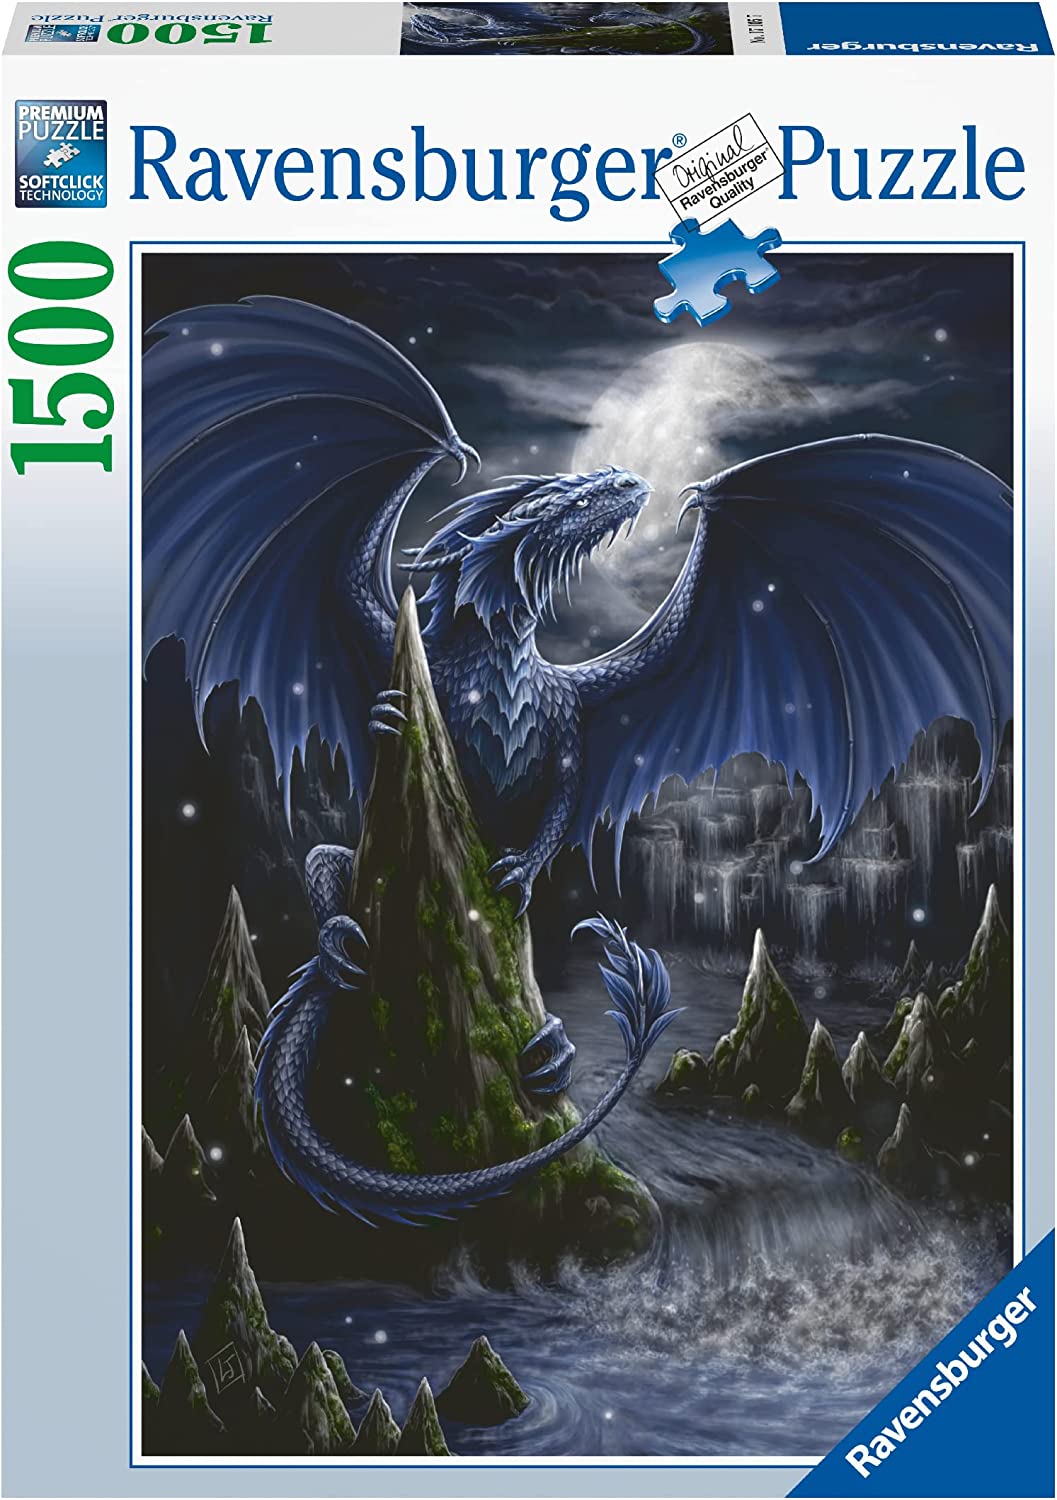 De donkerblauwe draak van SheBlackDragon, puzzel van 1500 stukjes